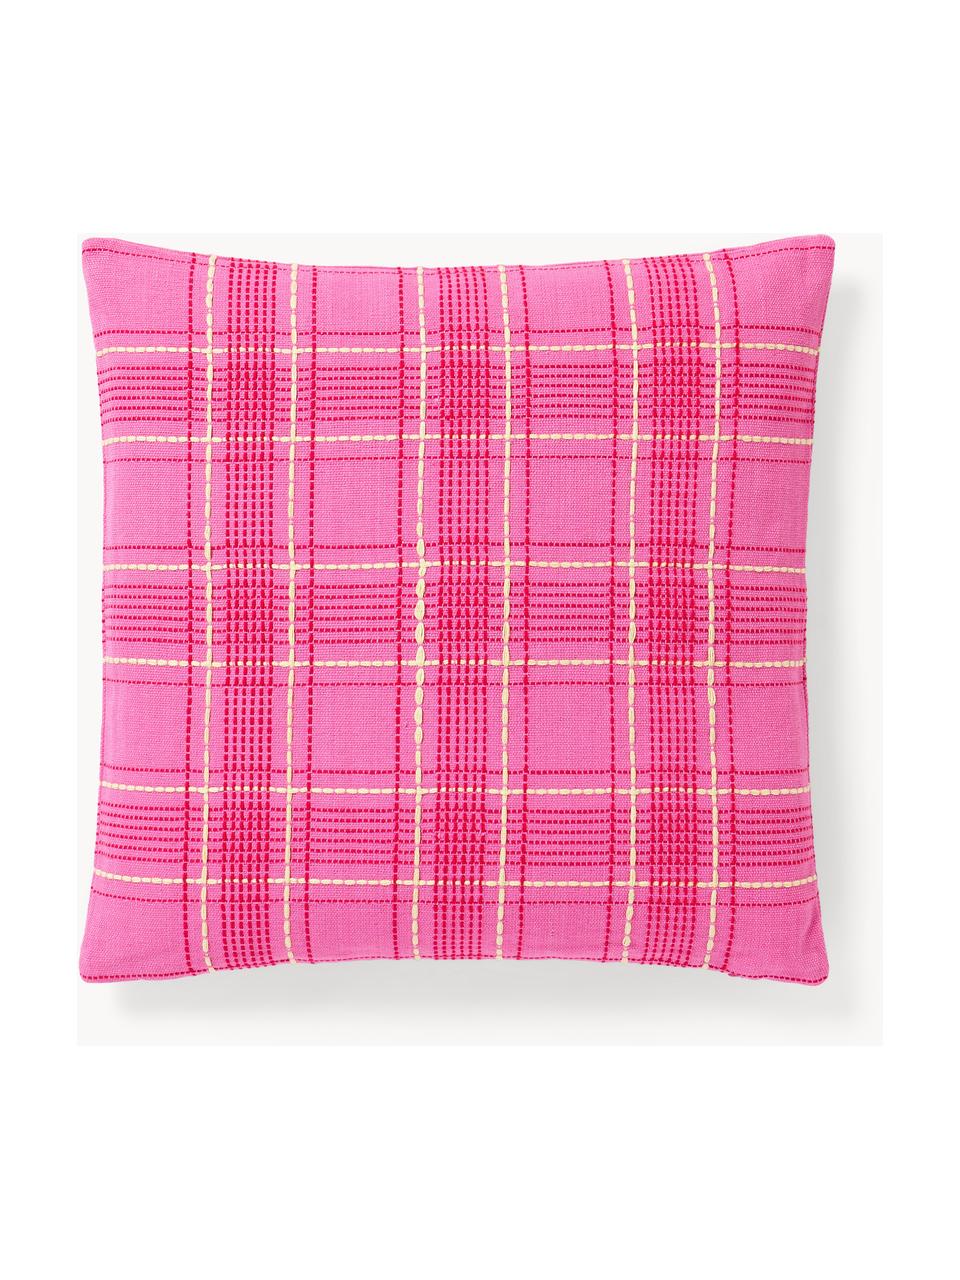 Poszewka na poduszkę z bawełny Orla, 100% bawełna, Różowy, S 45 x D 45 cm